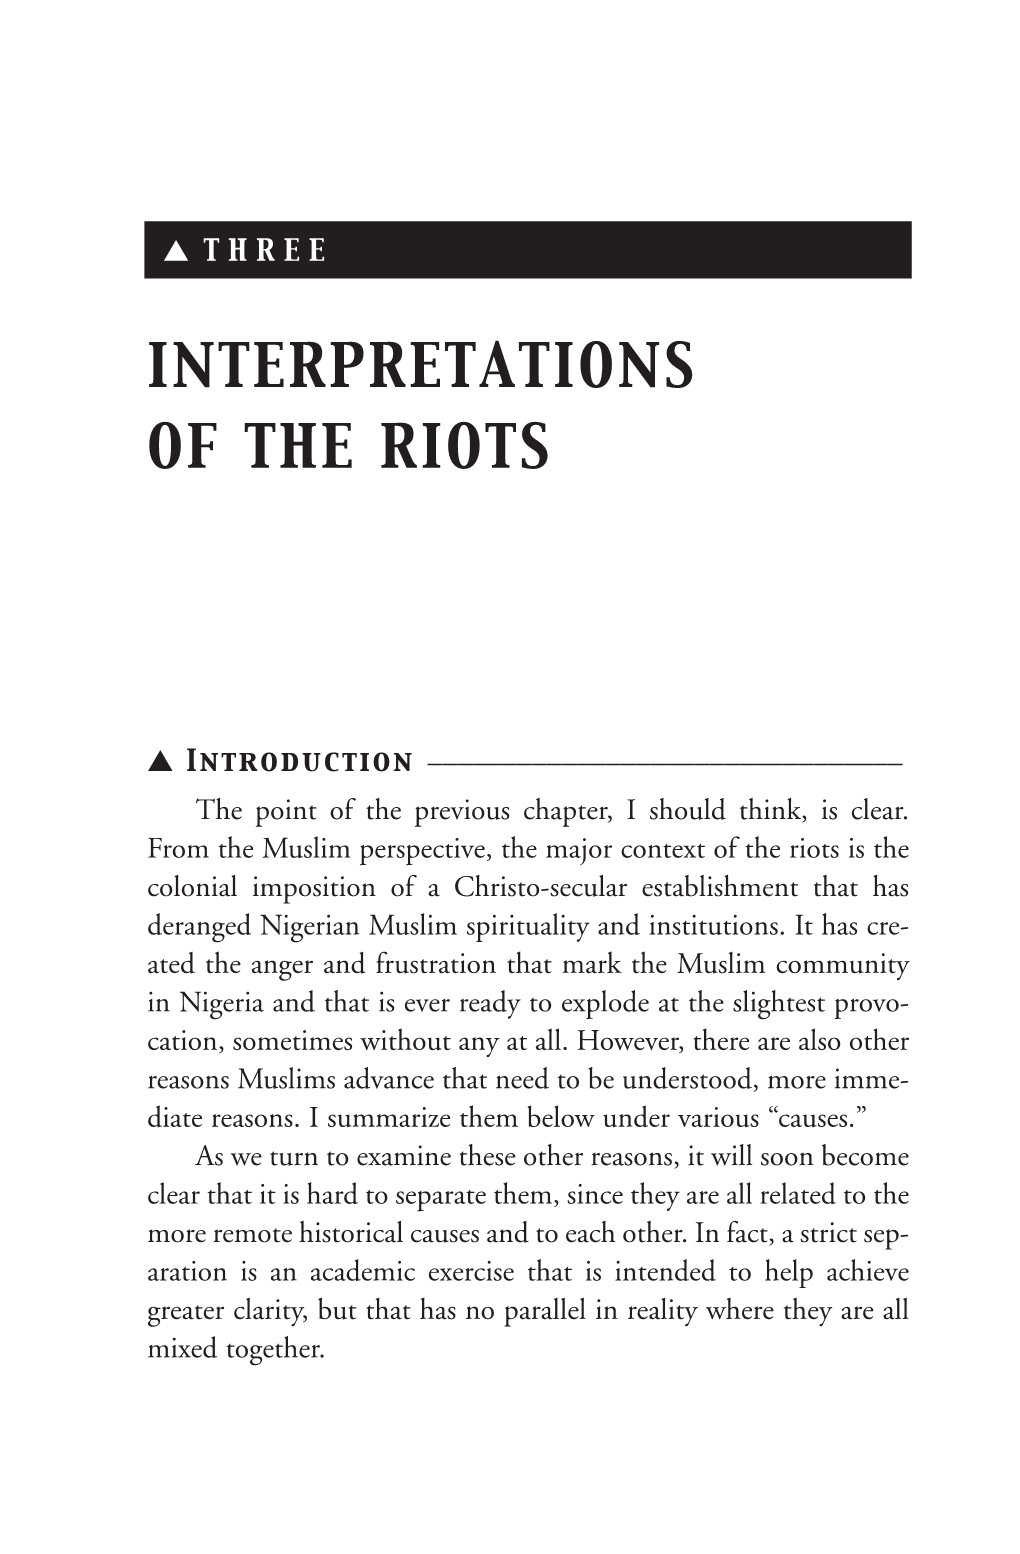 Interpretations of the Riots